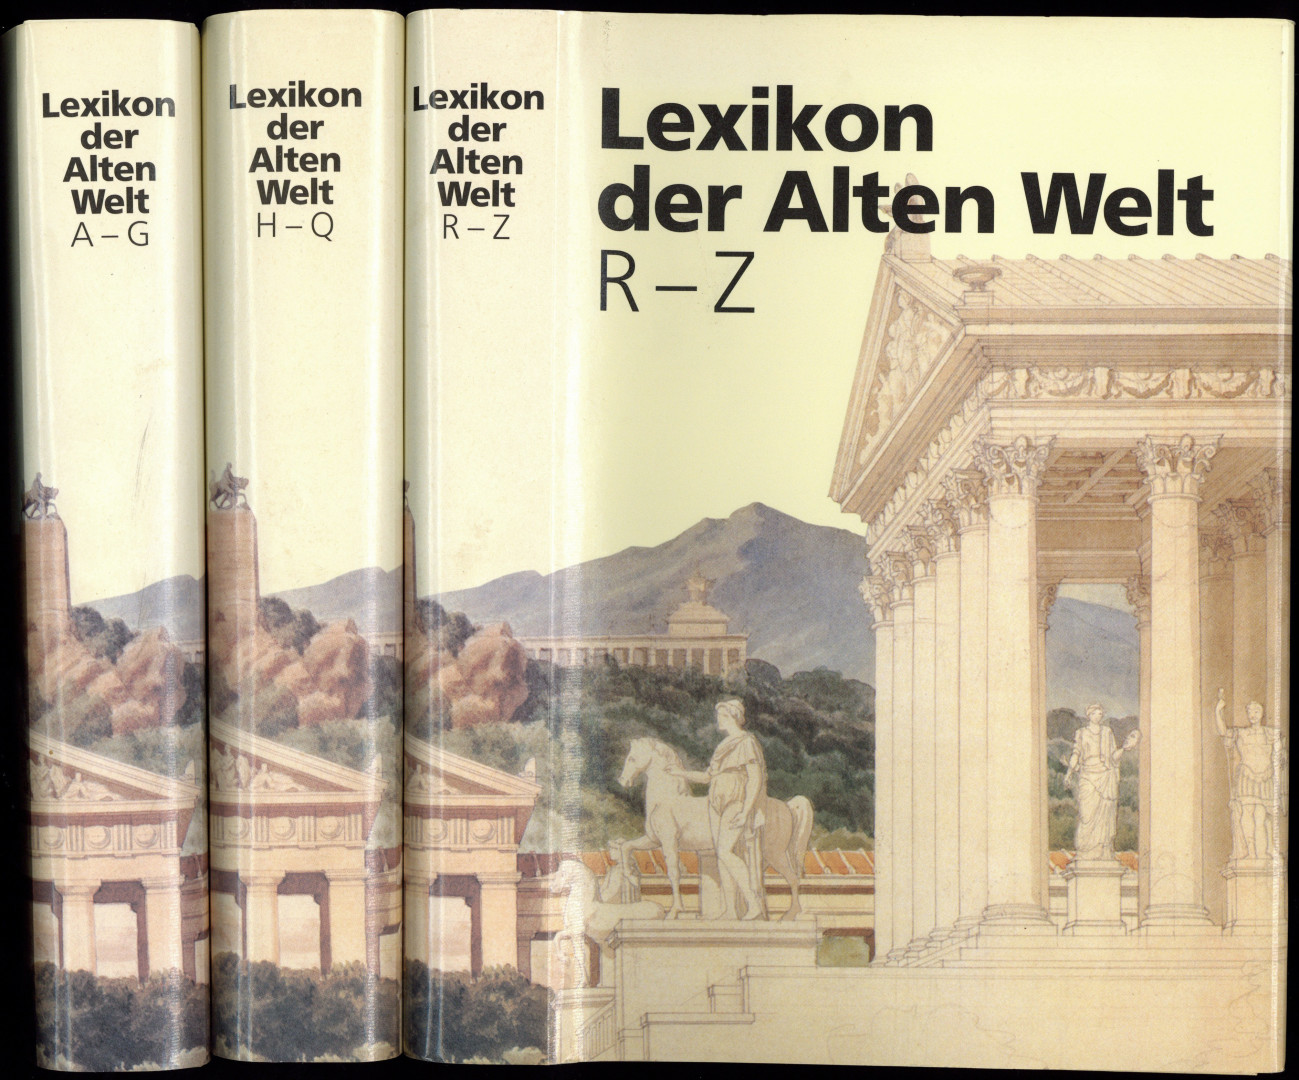 Lexikon der Alten Welt. 3 Bände. - Andresen, Carl, Hartmut Erbse, Olof Gigon, Karl Schefold, Karl Friedrich Stroheker u. a. (Hrsgr.)